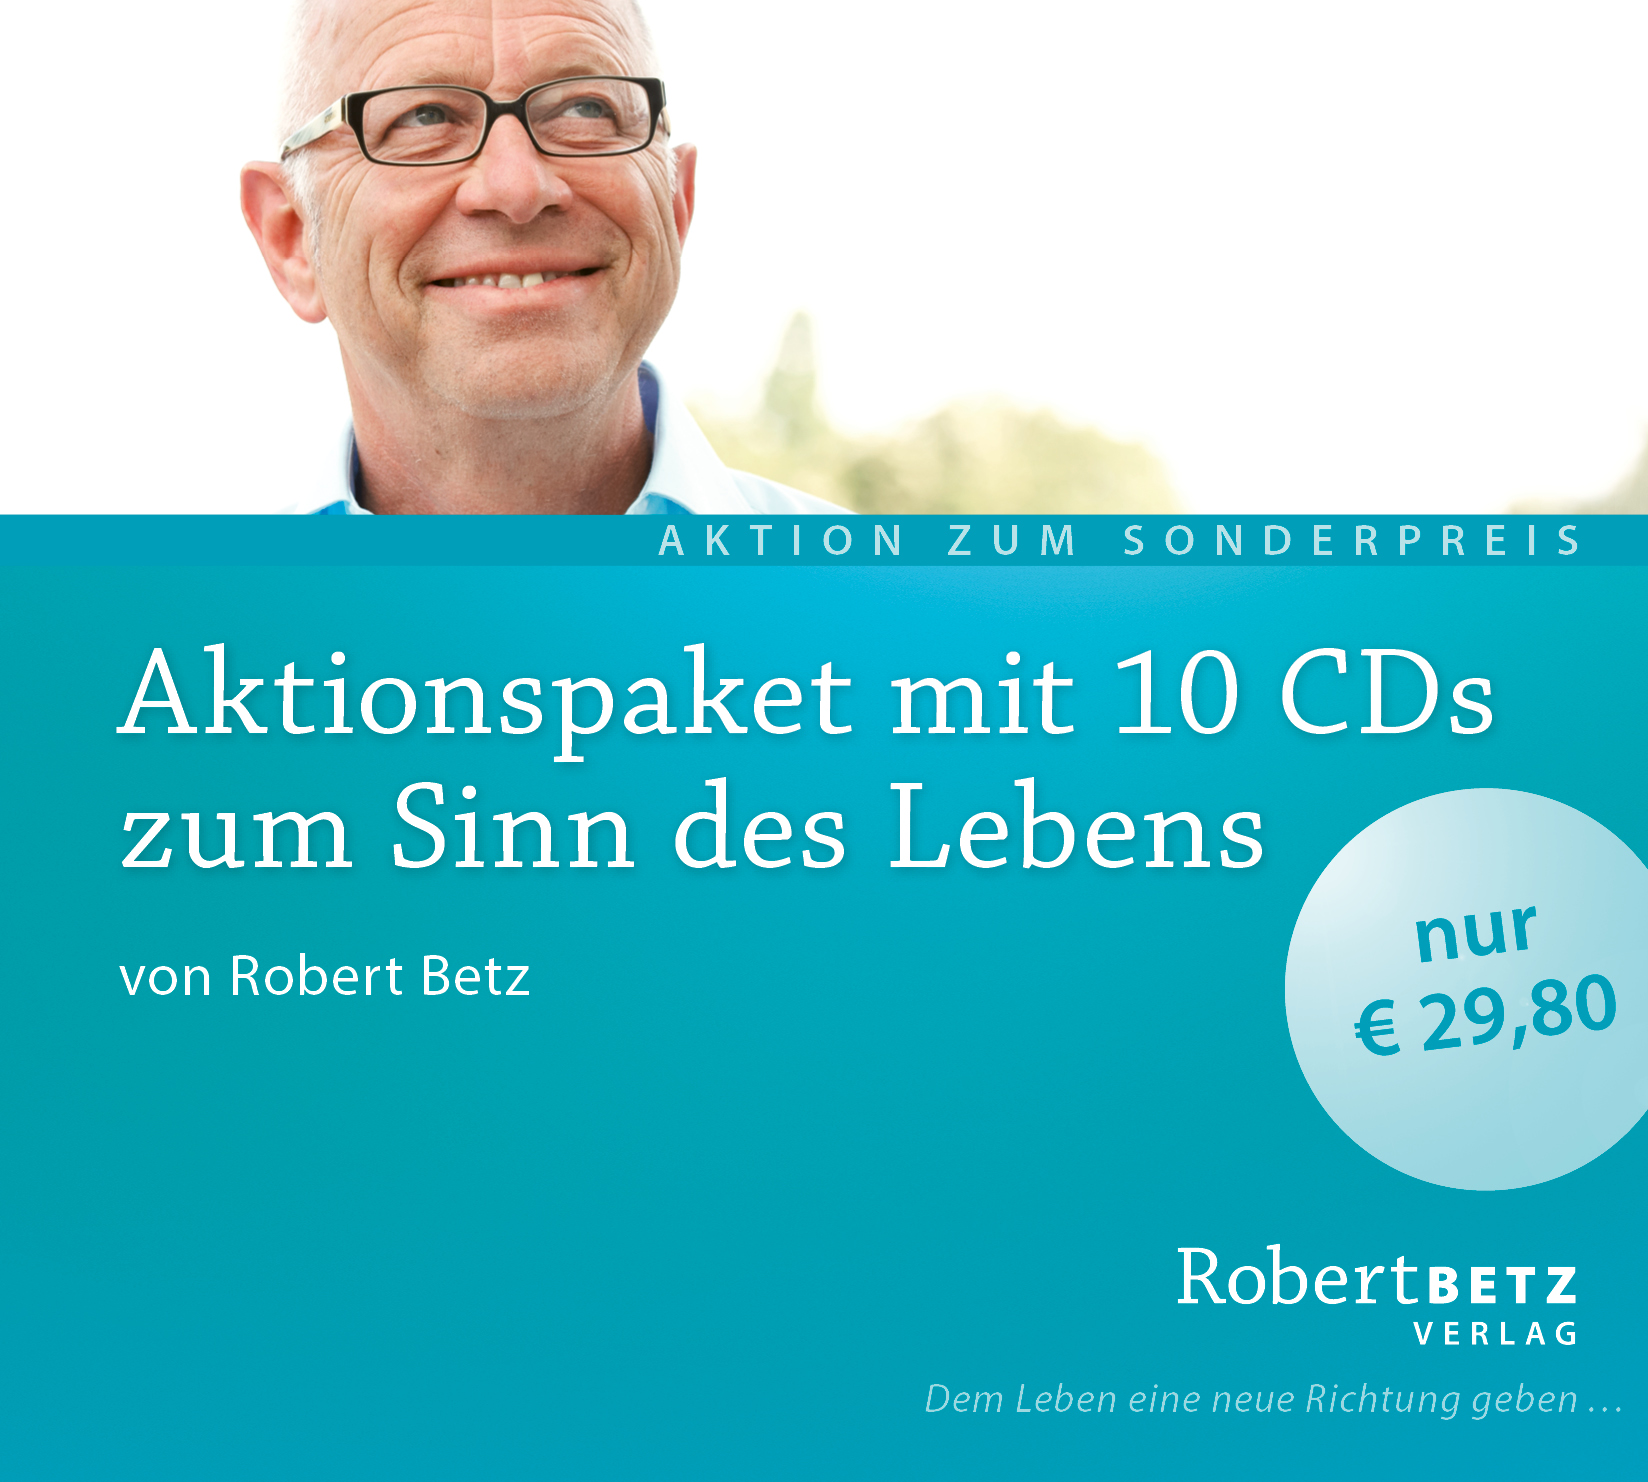 10 CDs im Aktionspaket: Vorträge und Meditationen zum Sinn des Lebens von Robert Betz